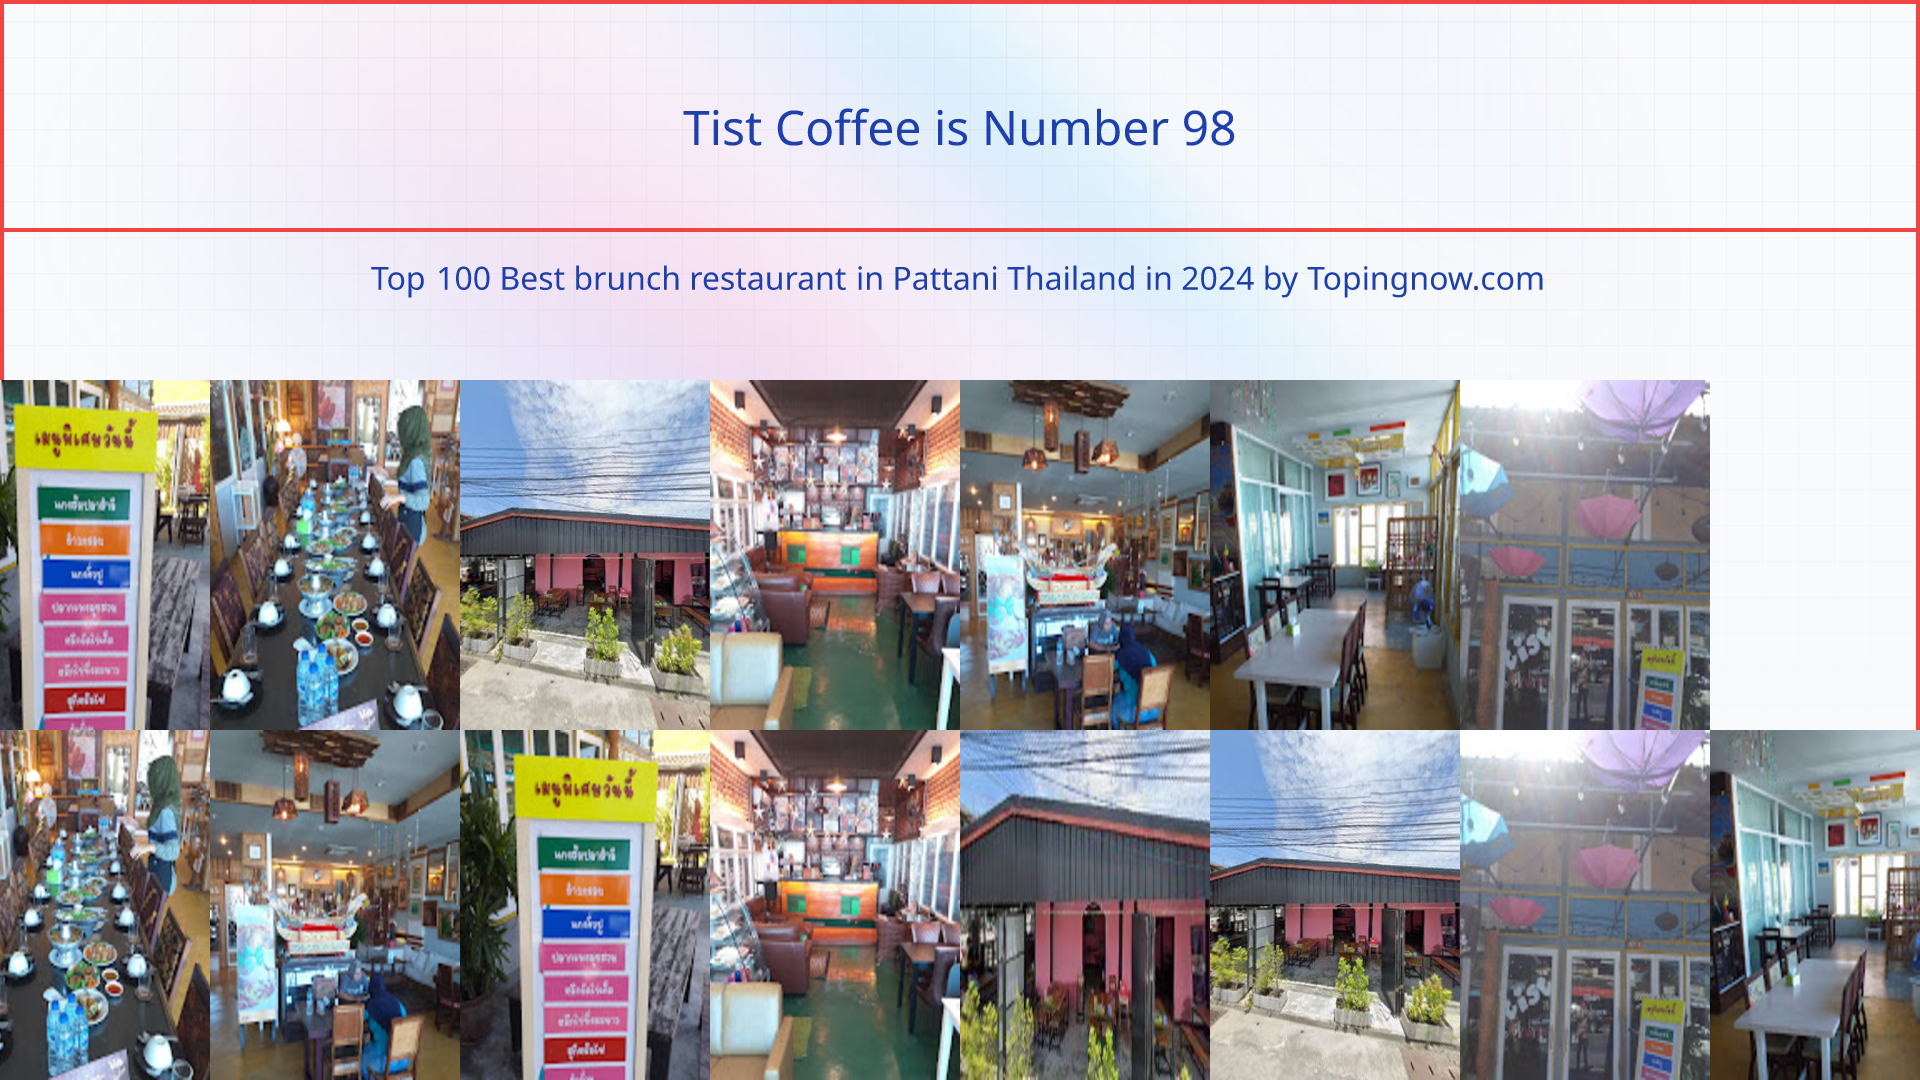 Tist Coffee: Top 100 Best brunch restaurant in Pattani Thailand in 2024